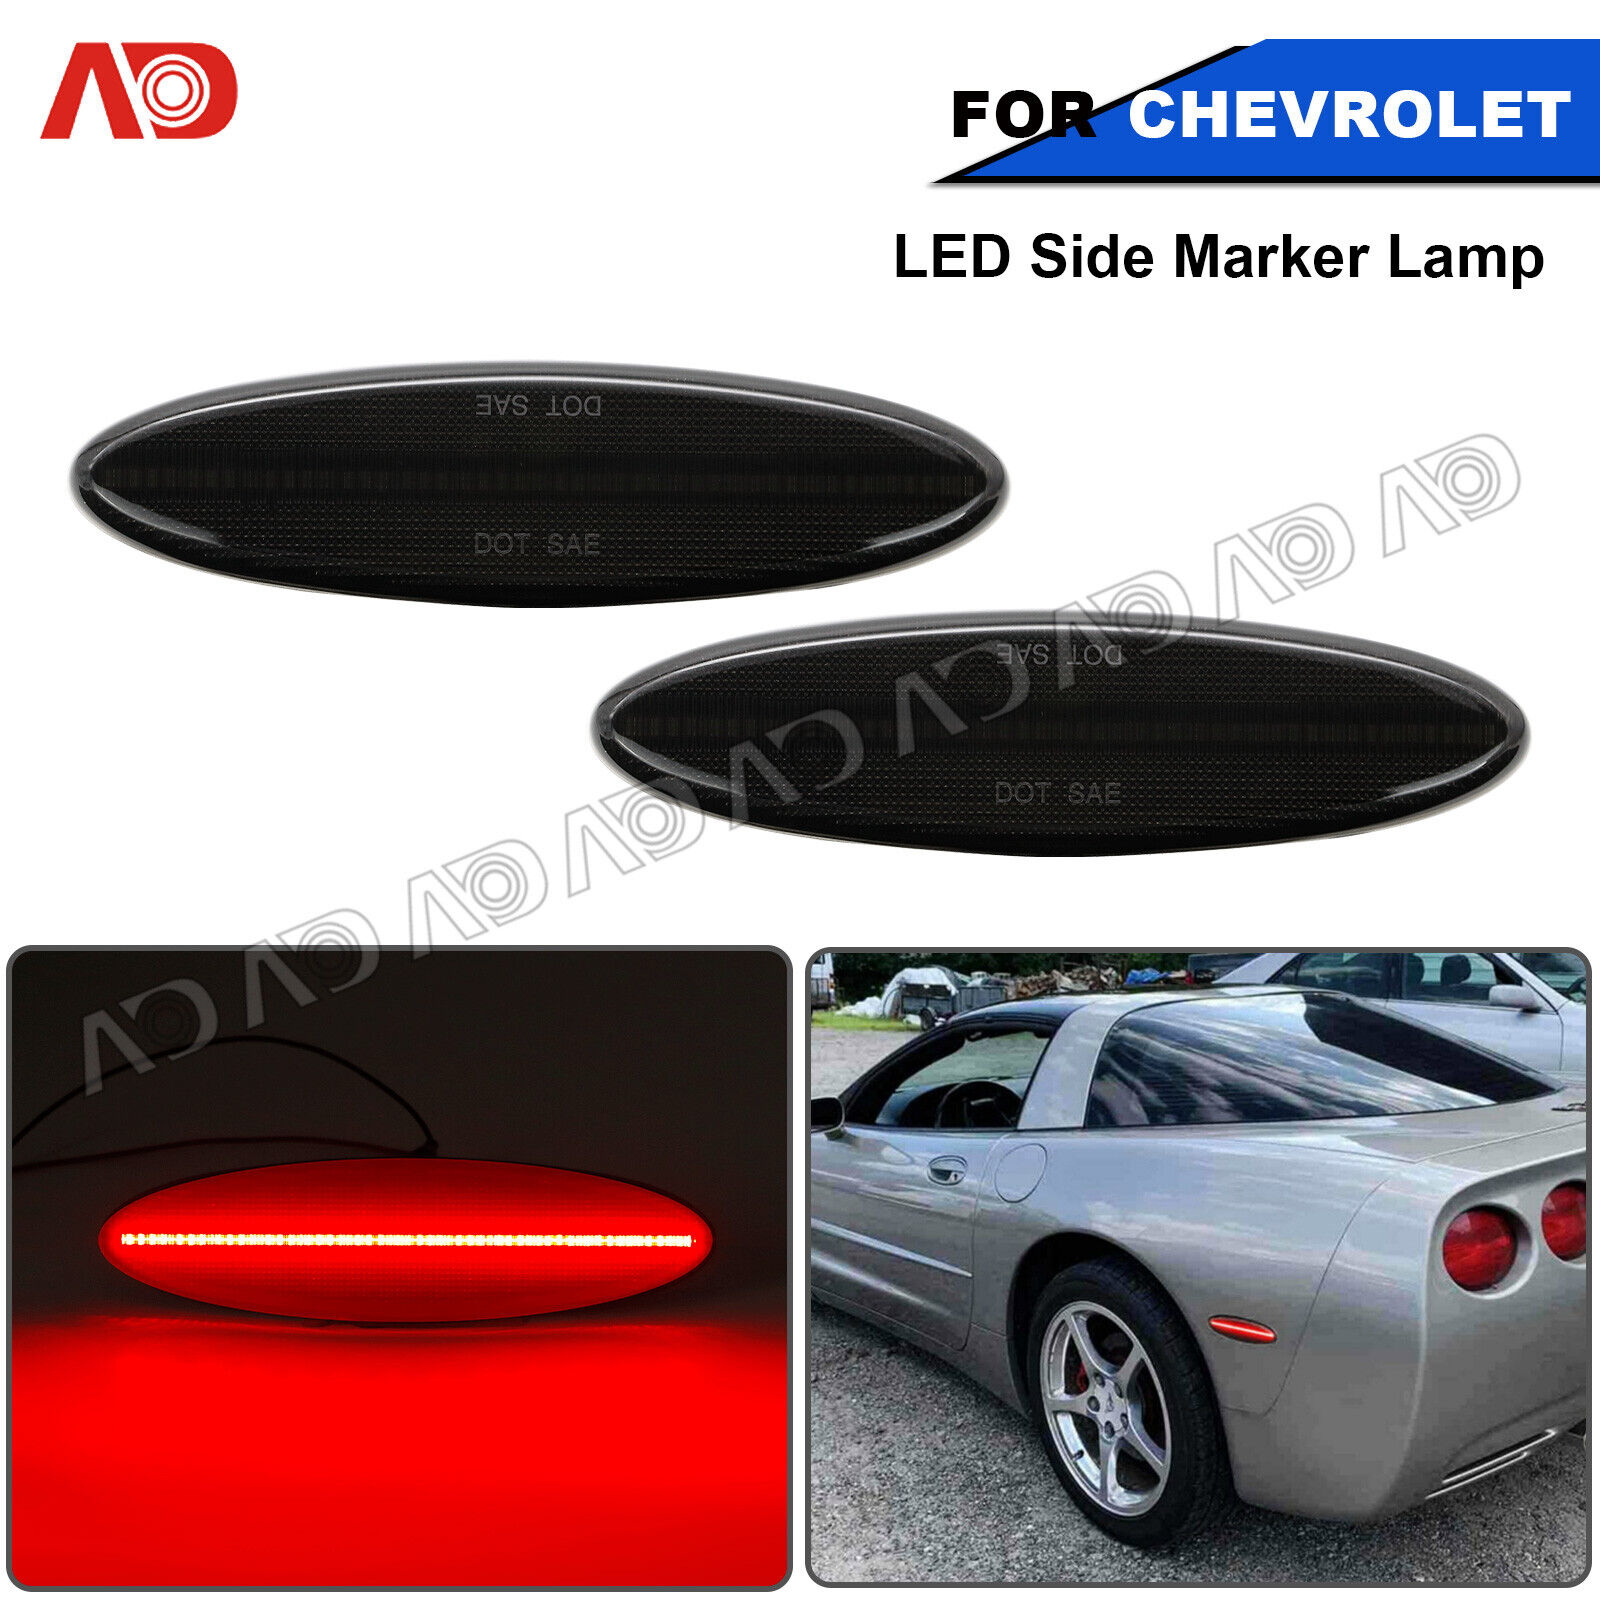 For 1997-2004 Chevrolet Corvette C5 Smoked LED Rear Red Side Marker Light Lamp